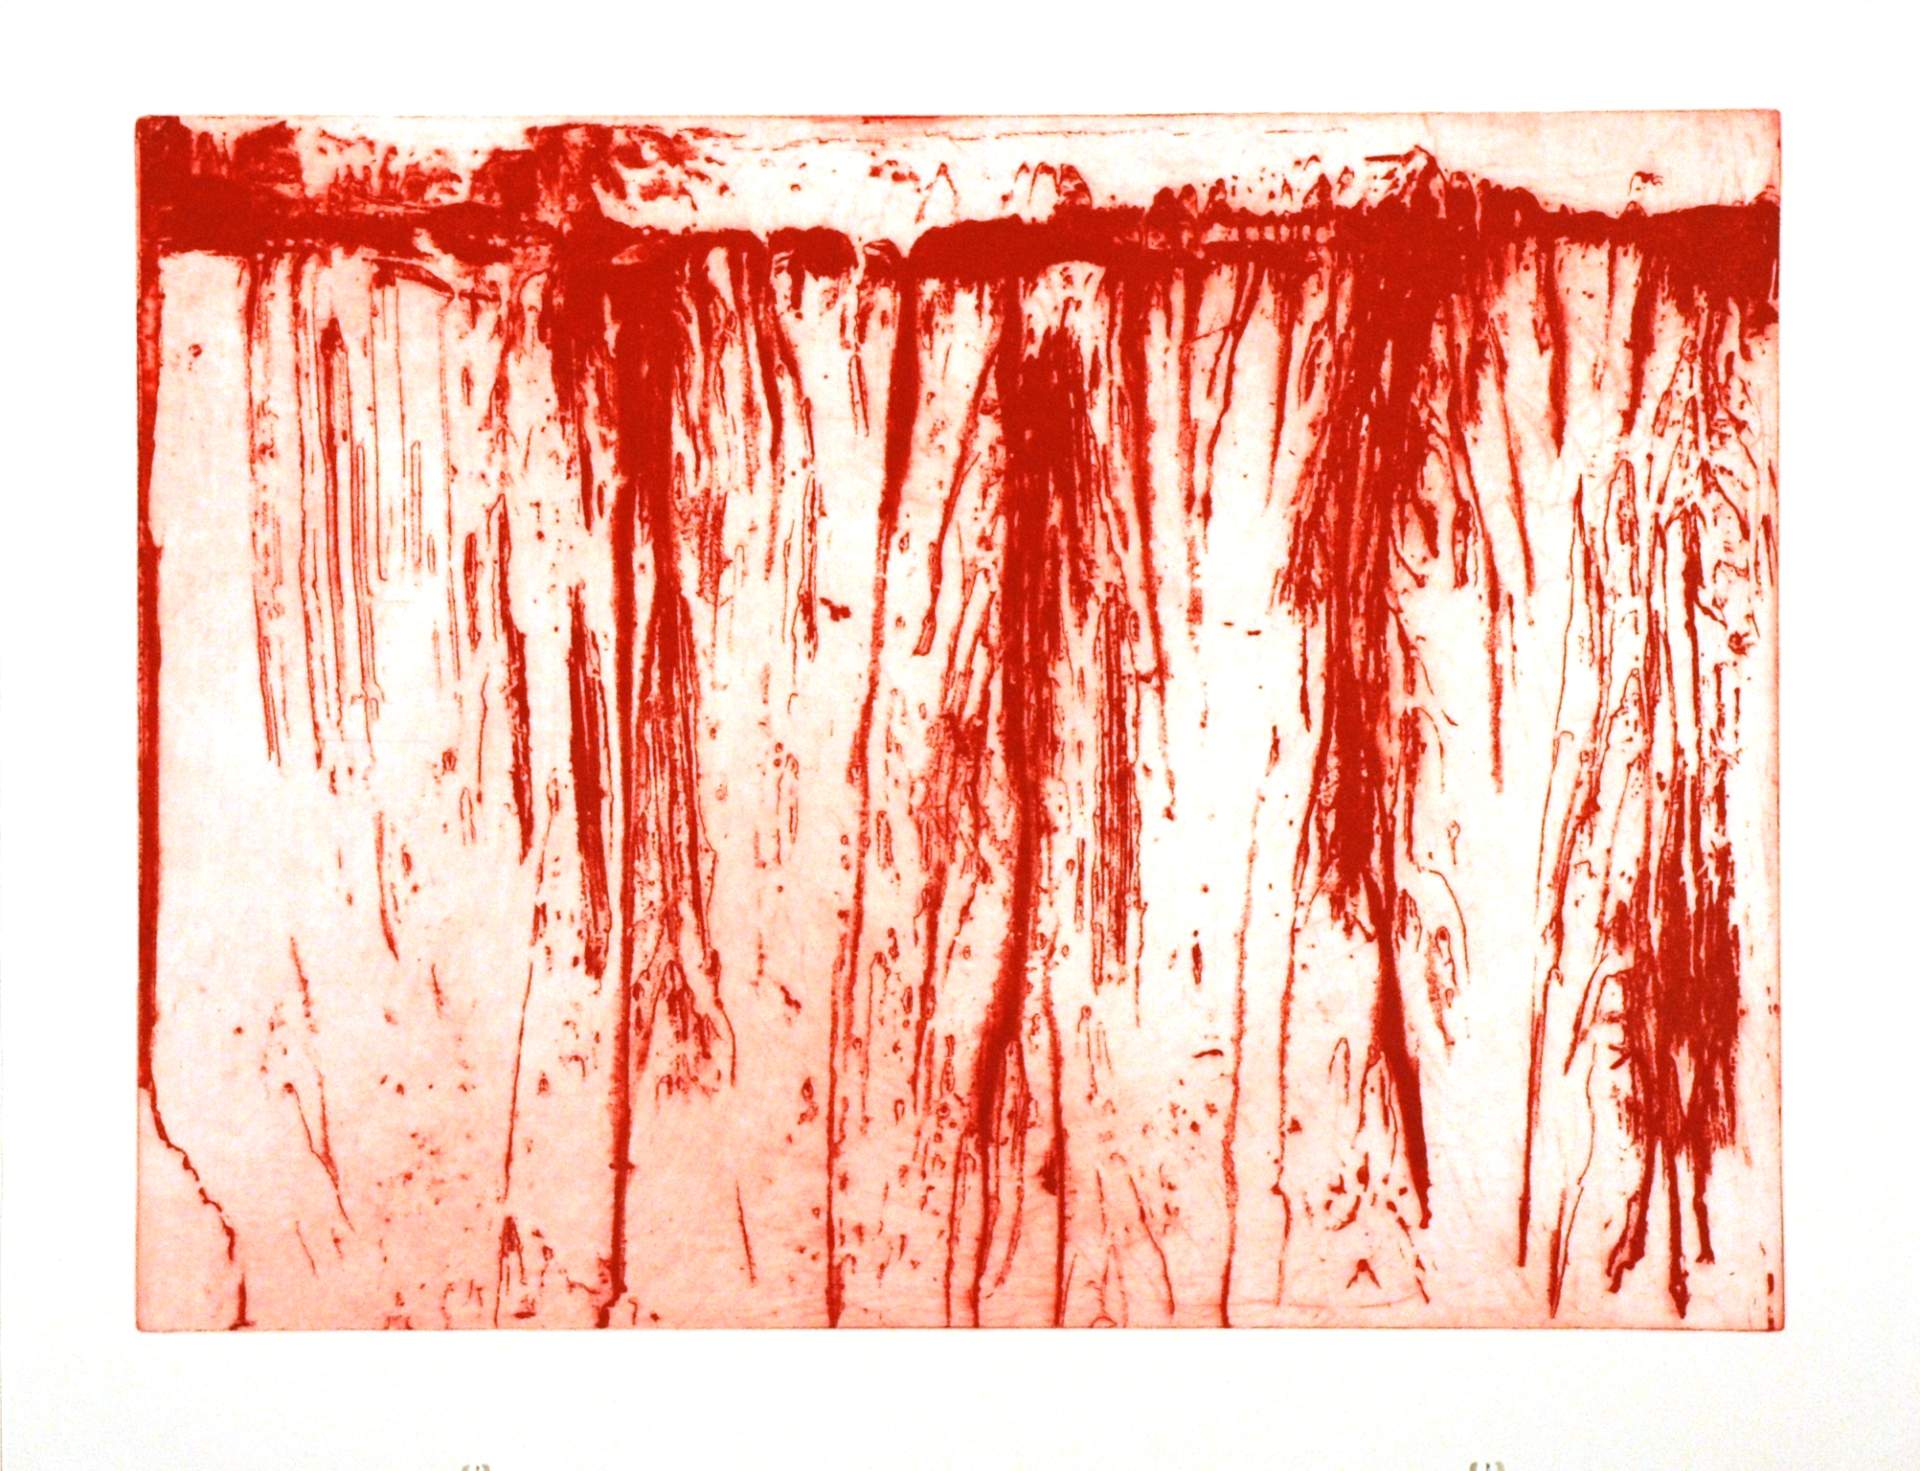 1. Blood, from Ten Plagues